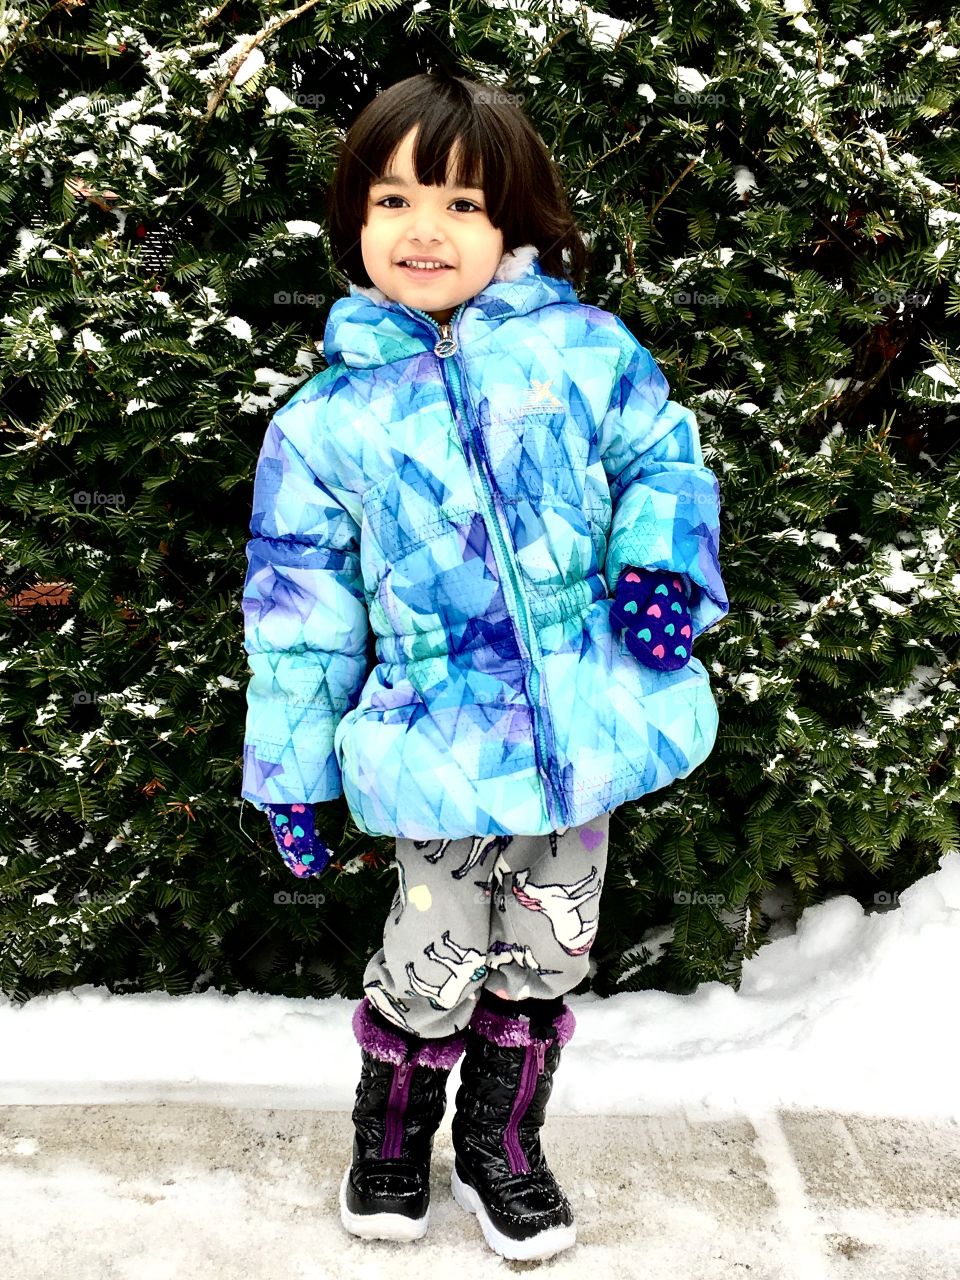 Baby model in snow